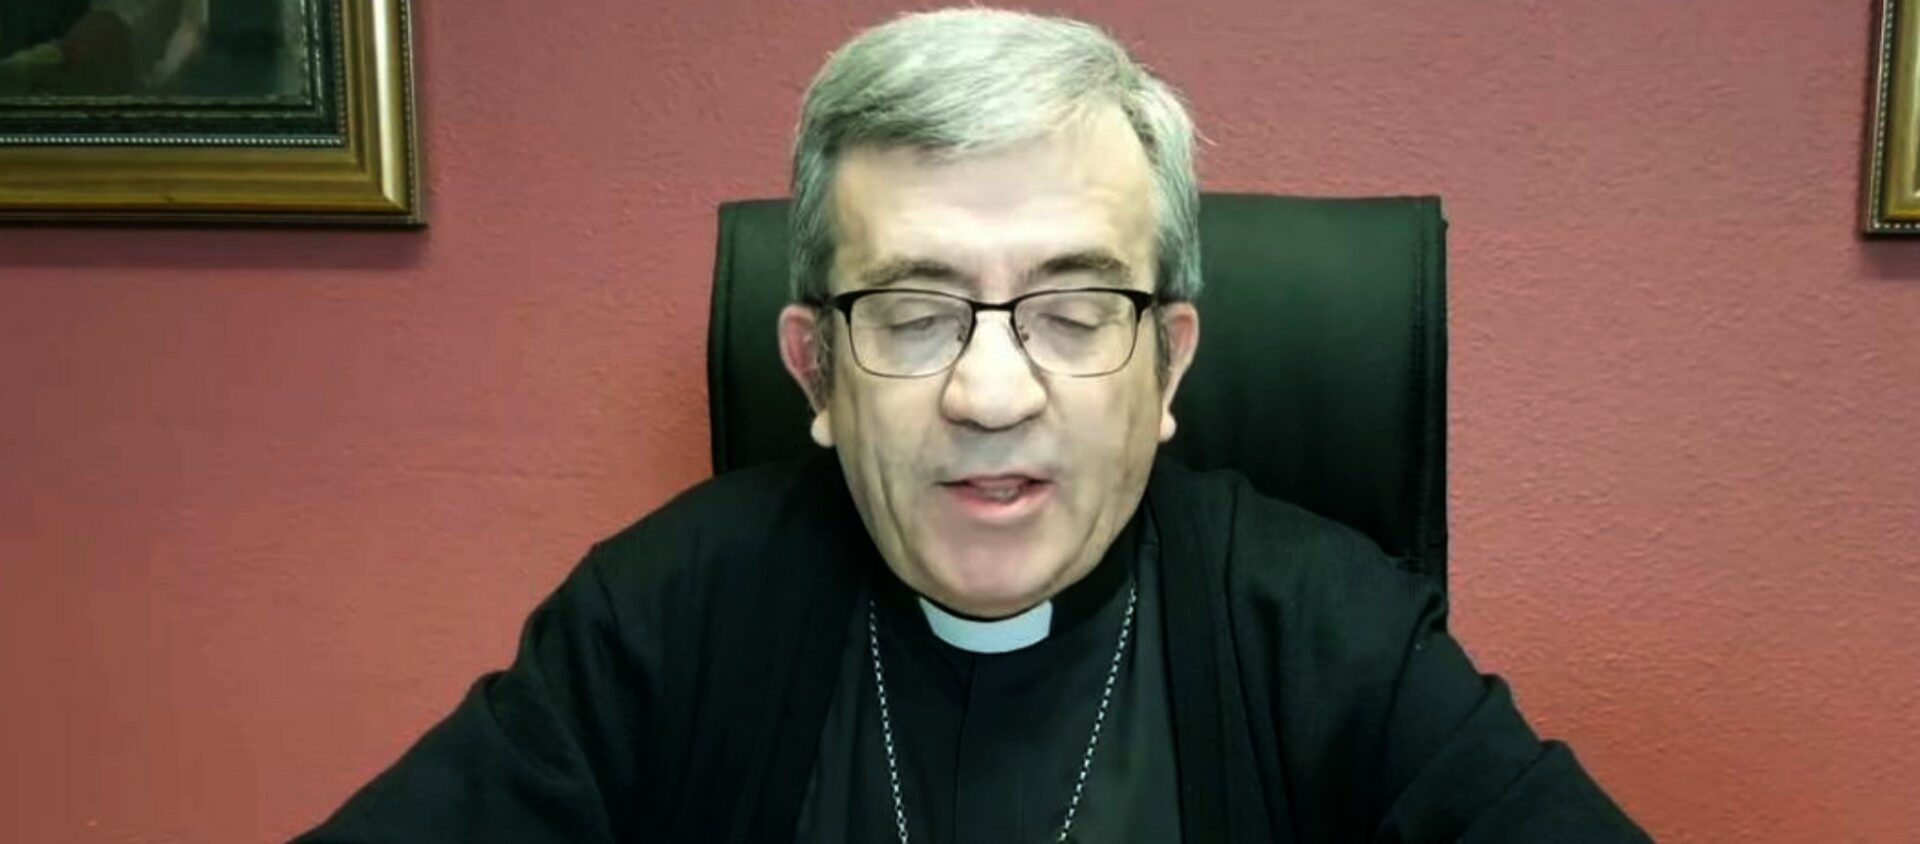 Mgr Luis Argüello, évêque auxiliaire de Valladolid, secrétaire général et porte-parole de la Conférence épiscopale espagnole (CEE) | capture d'écran